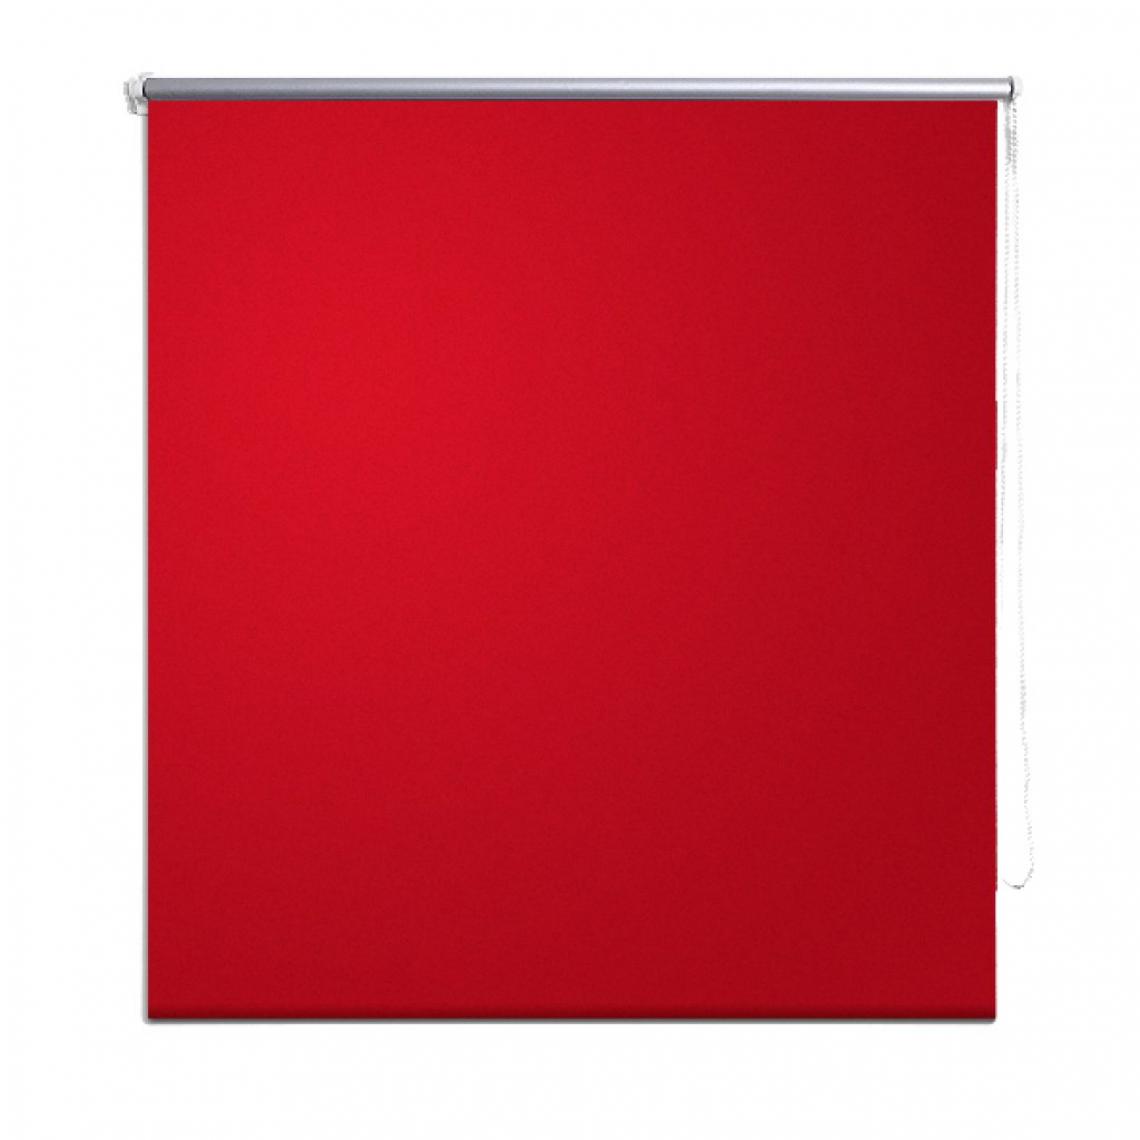 Helloshop26 - Store enrouleur rouge occultant 80 x 230 cm fenêtre rideau pare-vue volet roulant 4102042 - Store compatible Velux